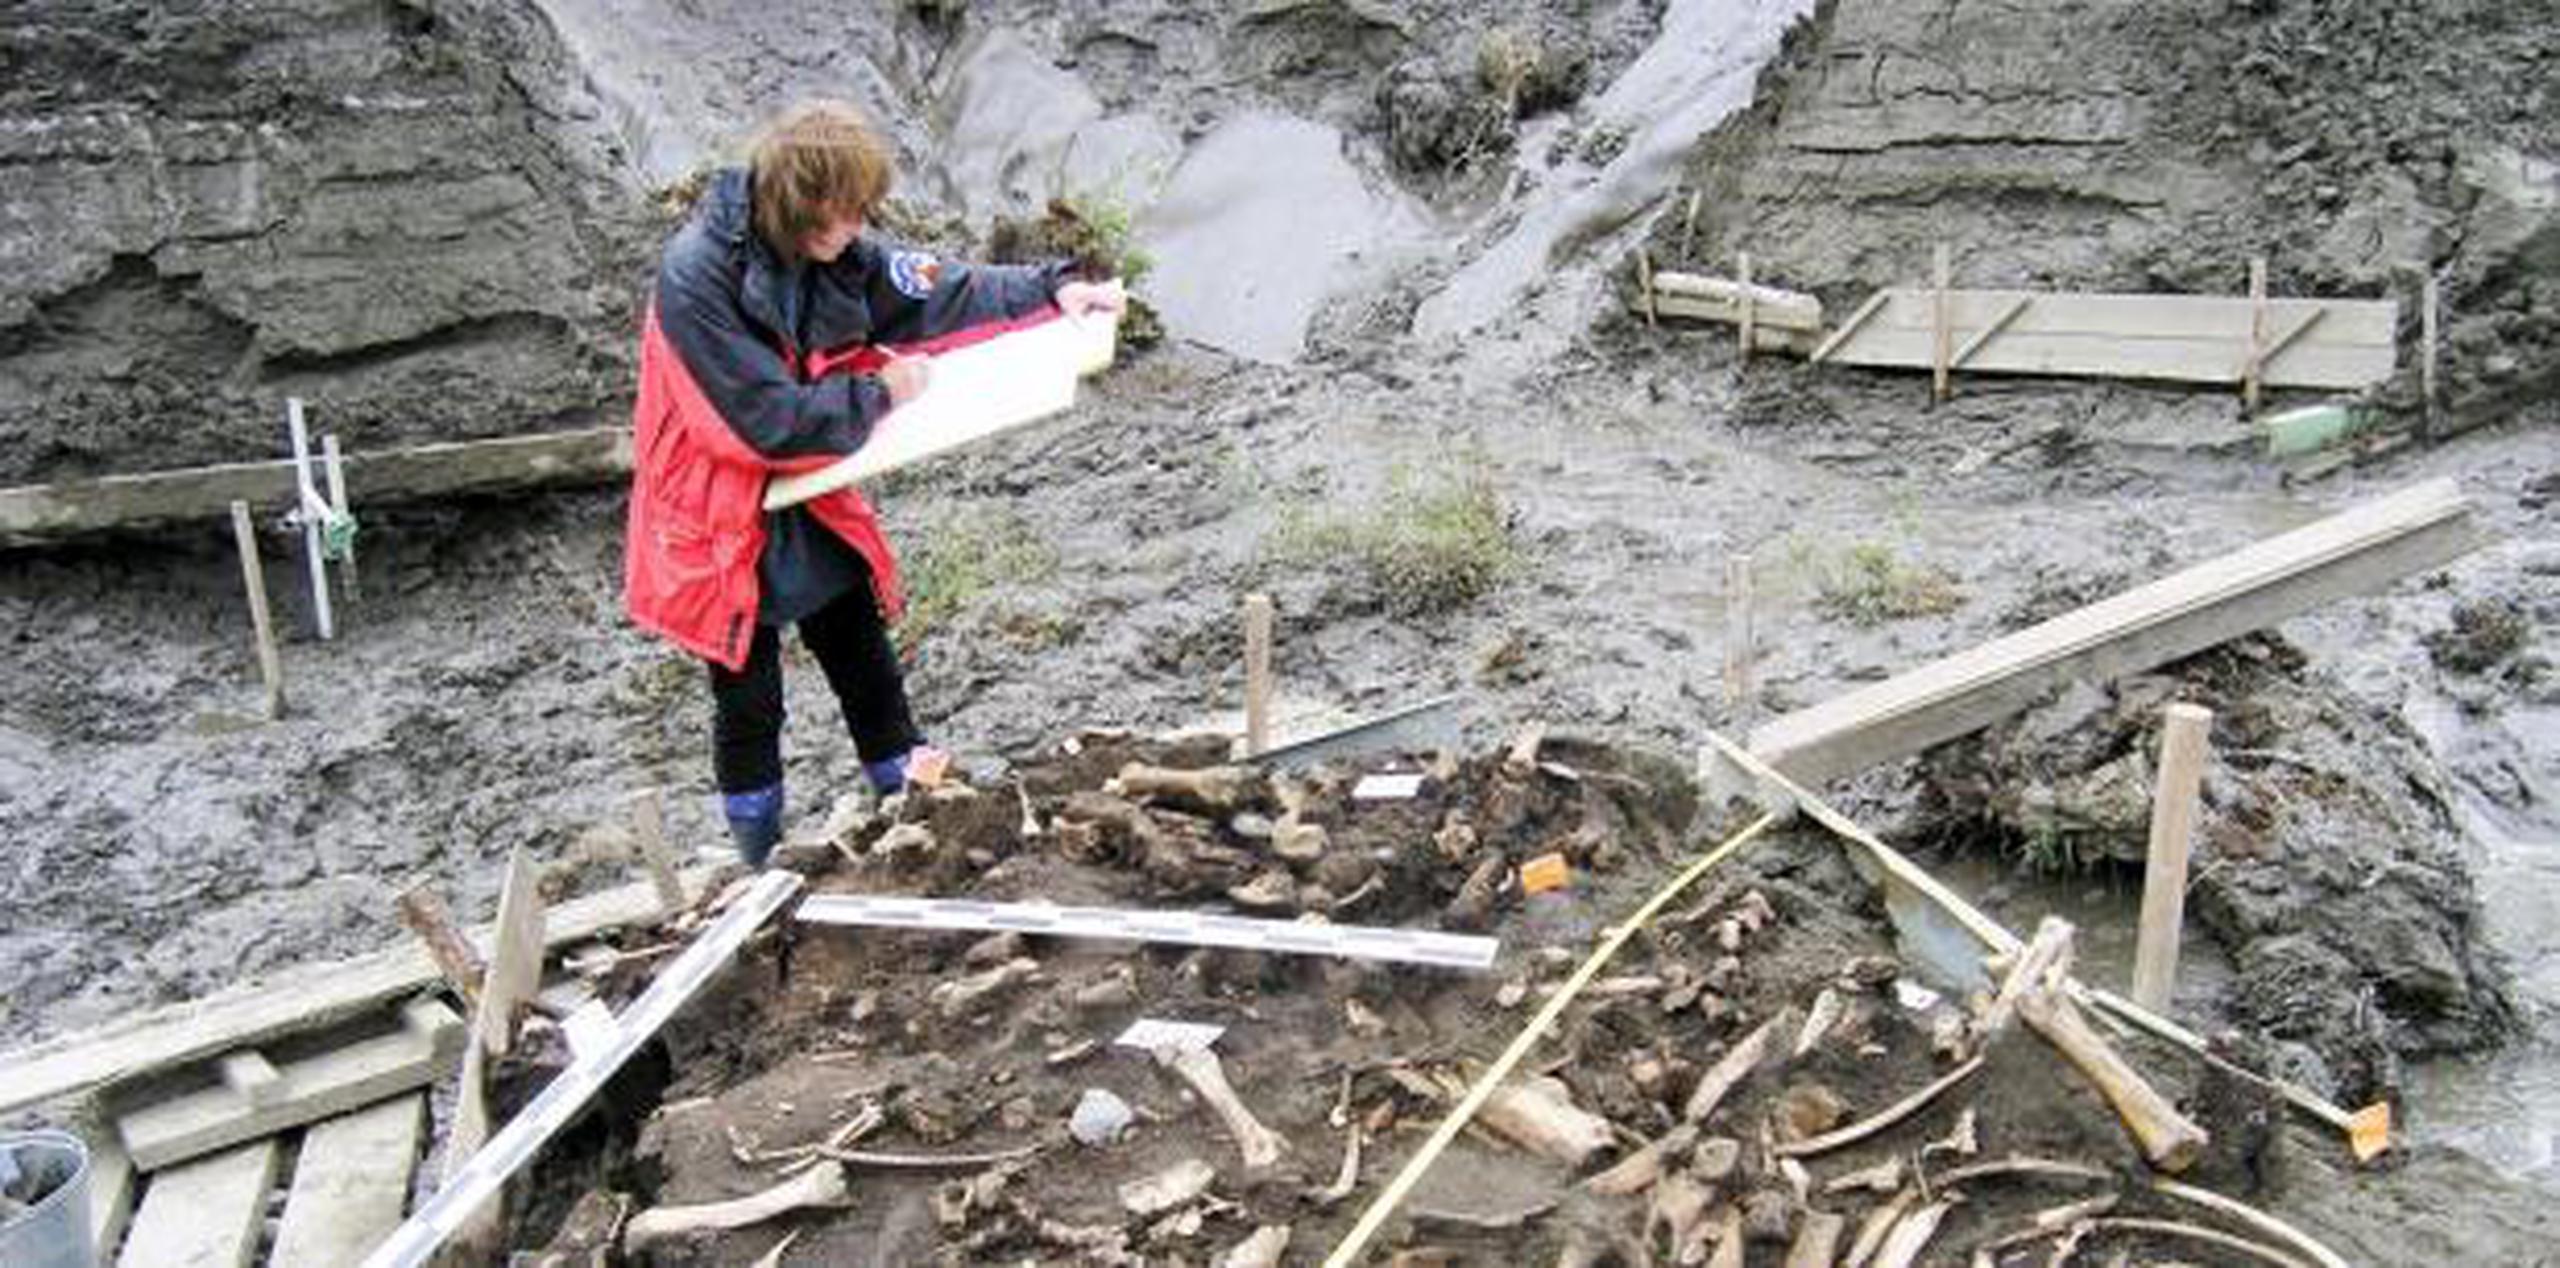 Investigadores indican que han detectado unos restos humanos siberianos de hace 10,000 genéticamente emparentados con los nativos americanos. (EFE)